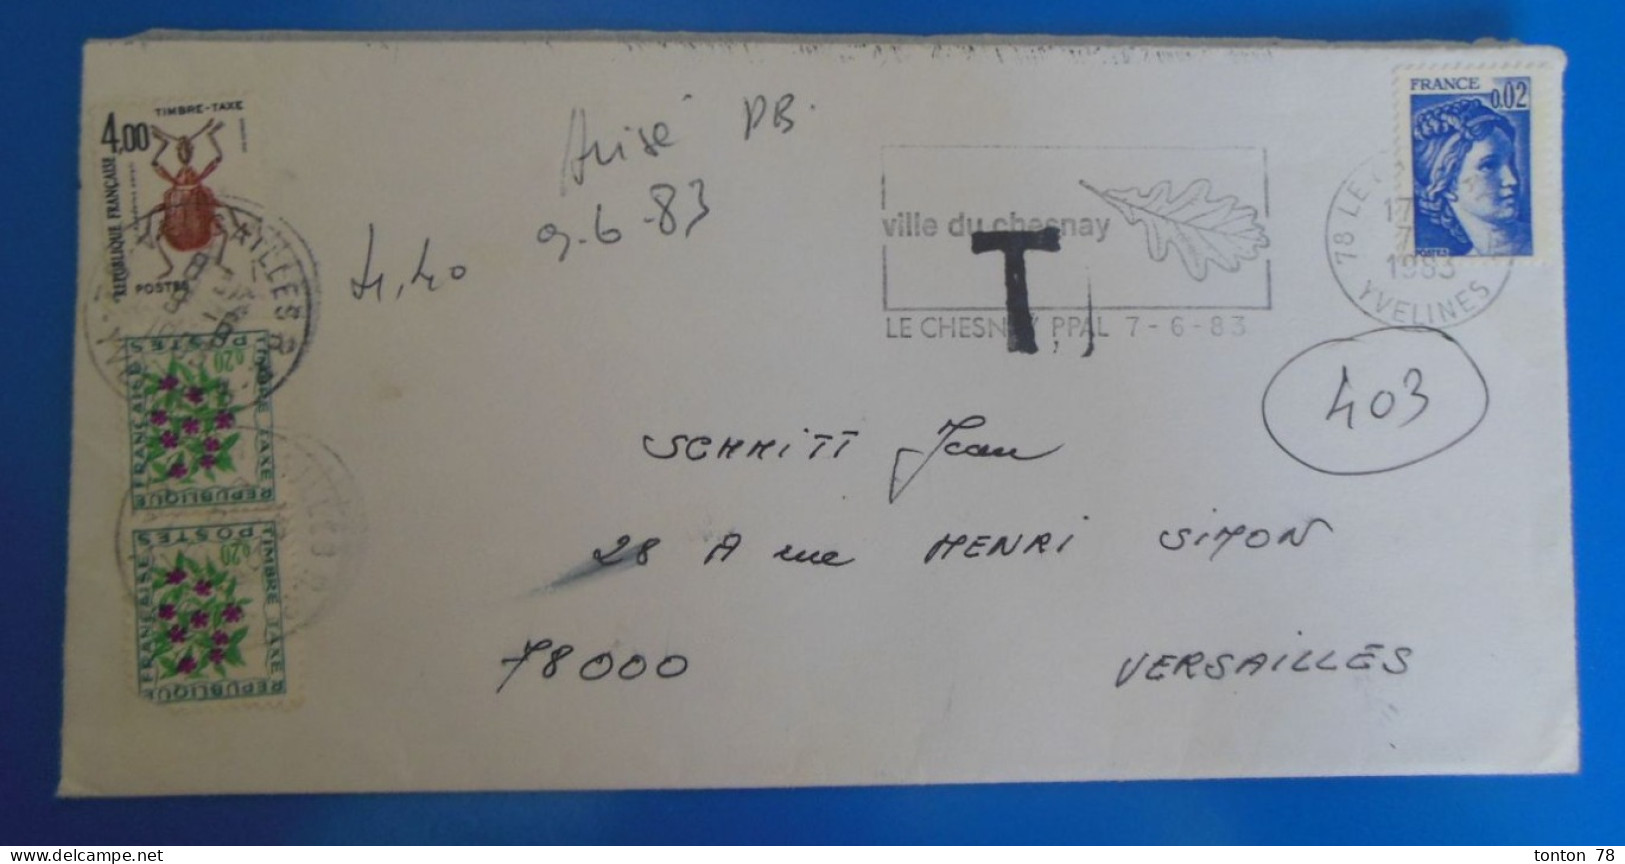 TIMBRES SUR LETTRE   -  TAXE  -  RECTO VERSO - 1960-.... Brieven & Documenten